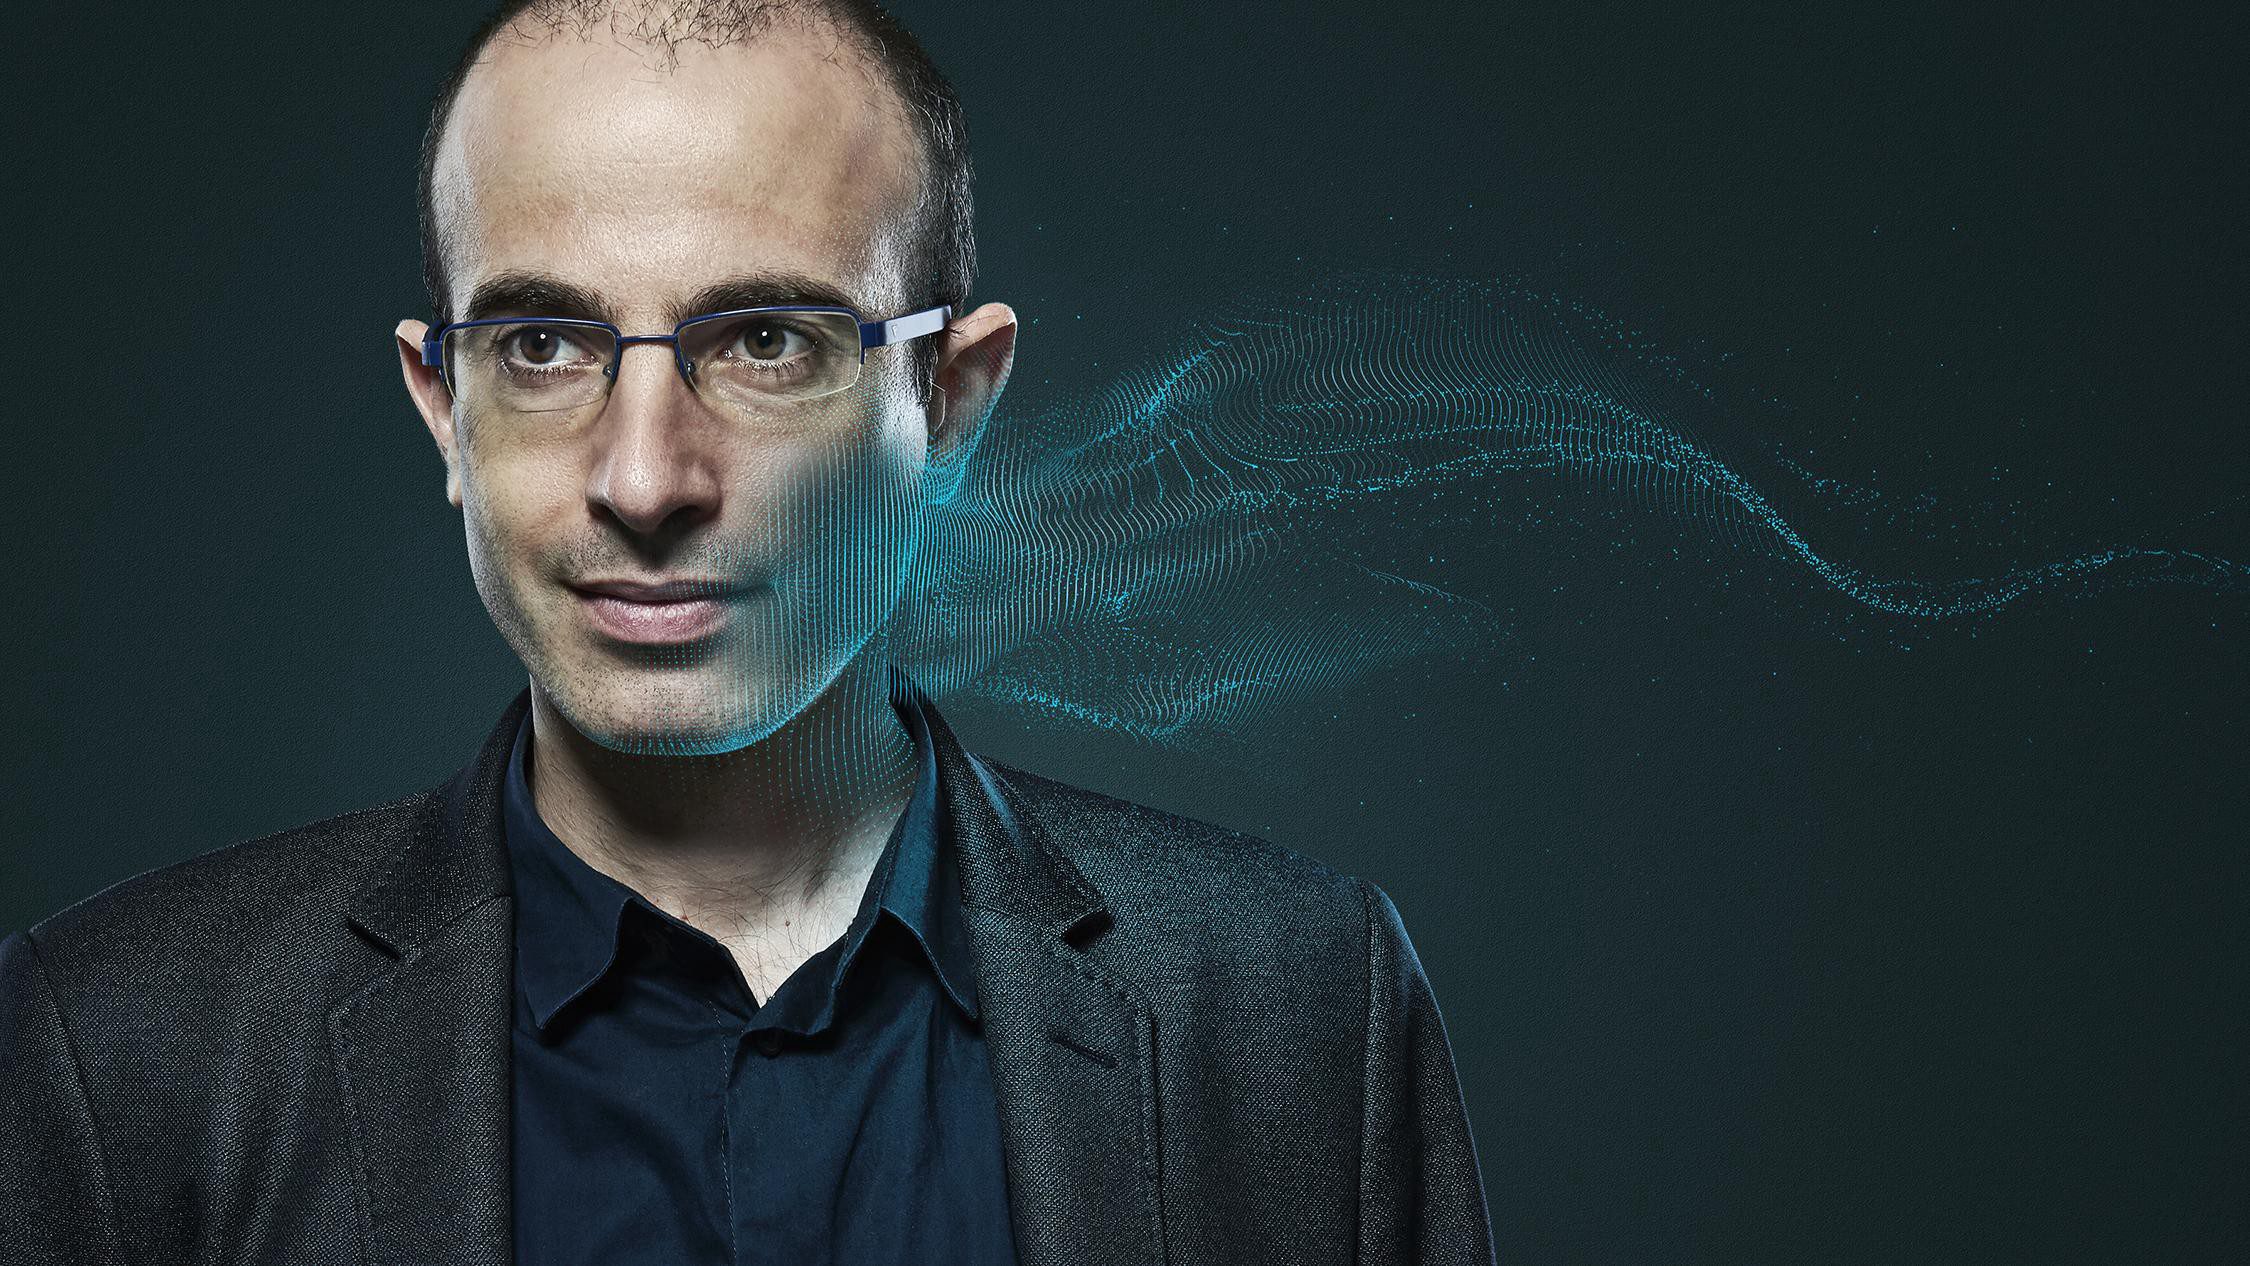 Yuval Noah Harari: Koronadan sonraki yaşamımız kalıcı olarak değişecektir28/03/2020 - yuval harari